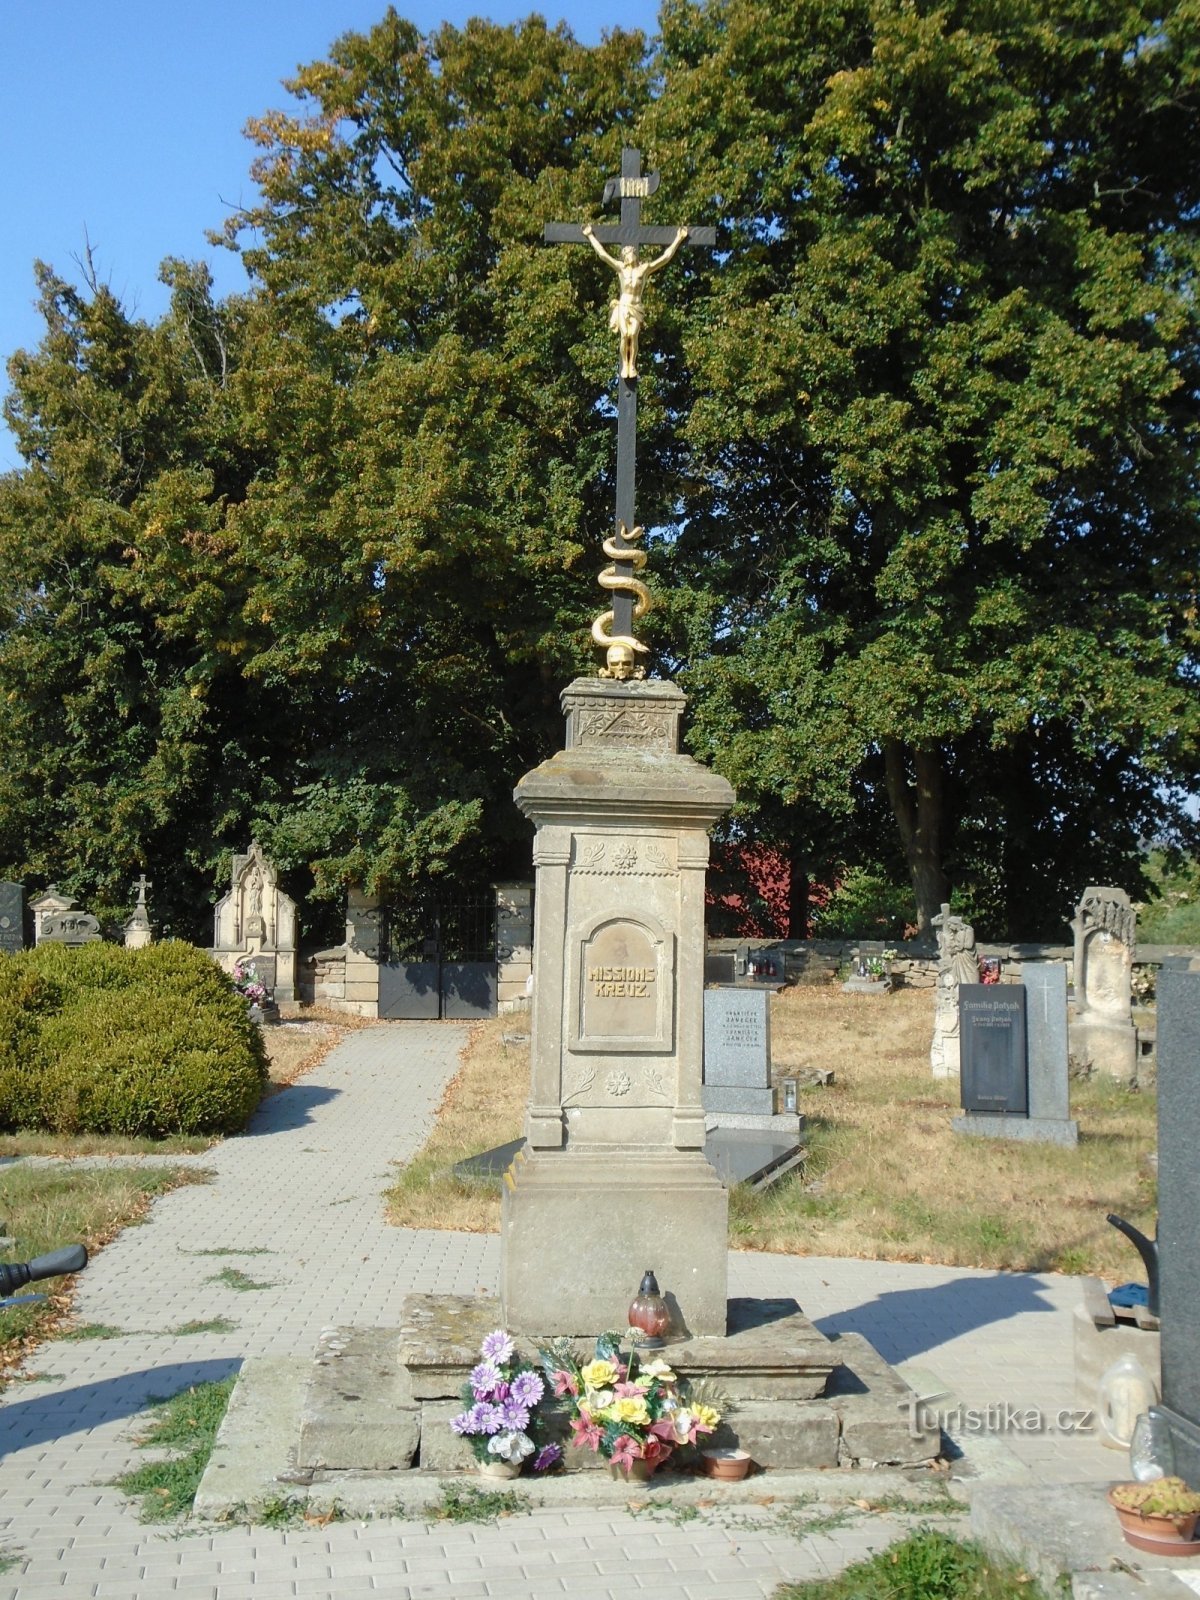 Cruz de la misión en el cementerio (Zaloňov, 17.8.2018/XNUMX/XNUMX)